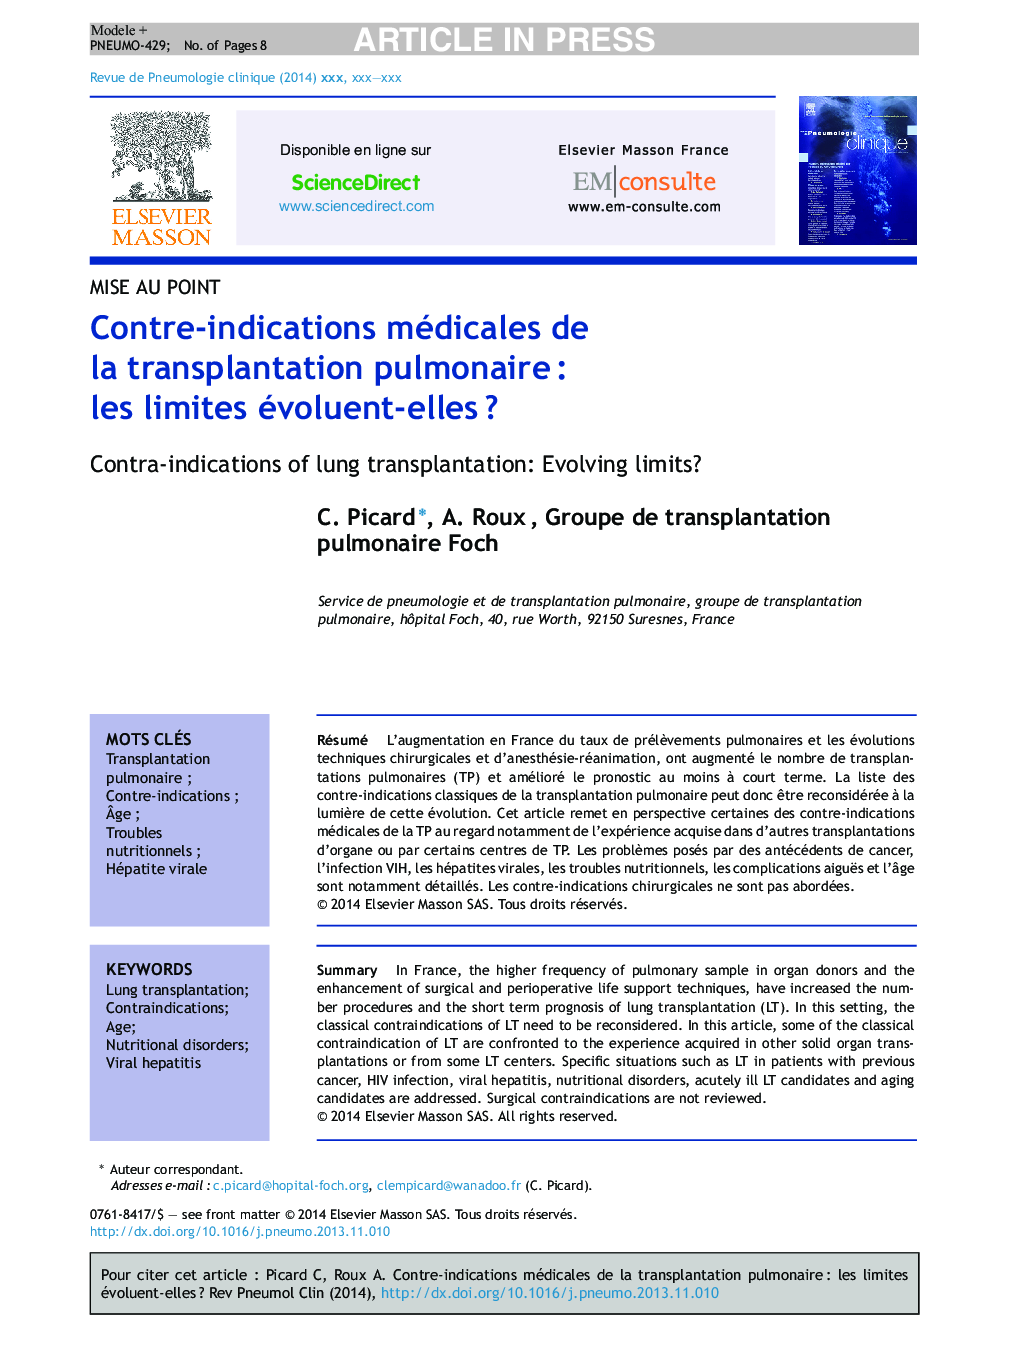 Contre-indications médicales de la transplantation pulmonaireÂ : les limites évoluent-ellesÂ ?